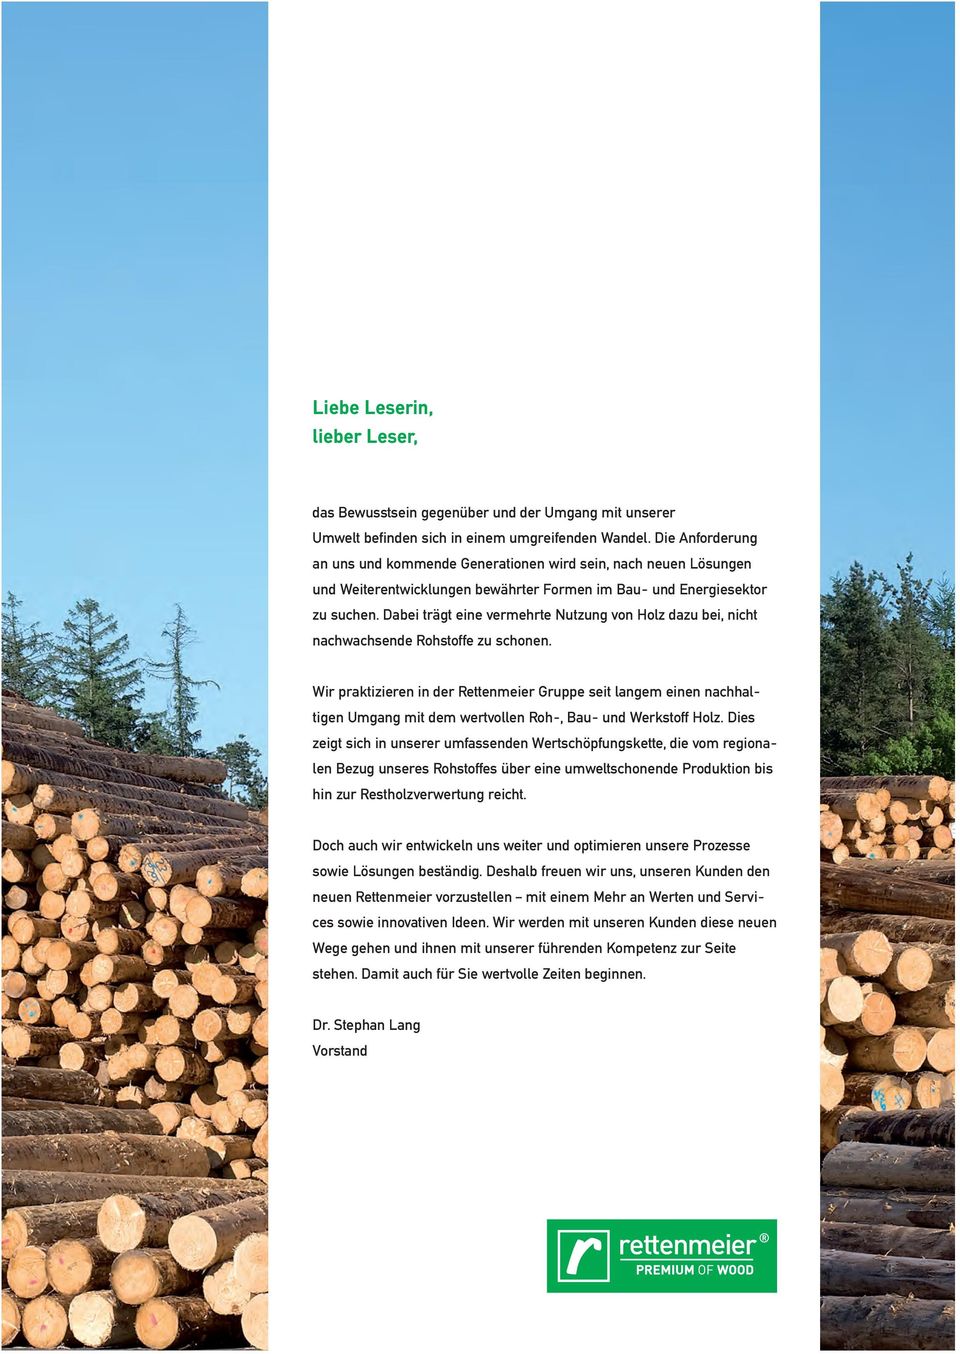 Dabei trägt eine vermehrte Nutzung von Holz dazu bei, nicht nachwachsende Rohstoffe zu schonen.